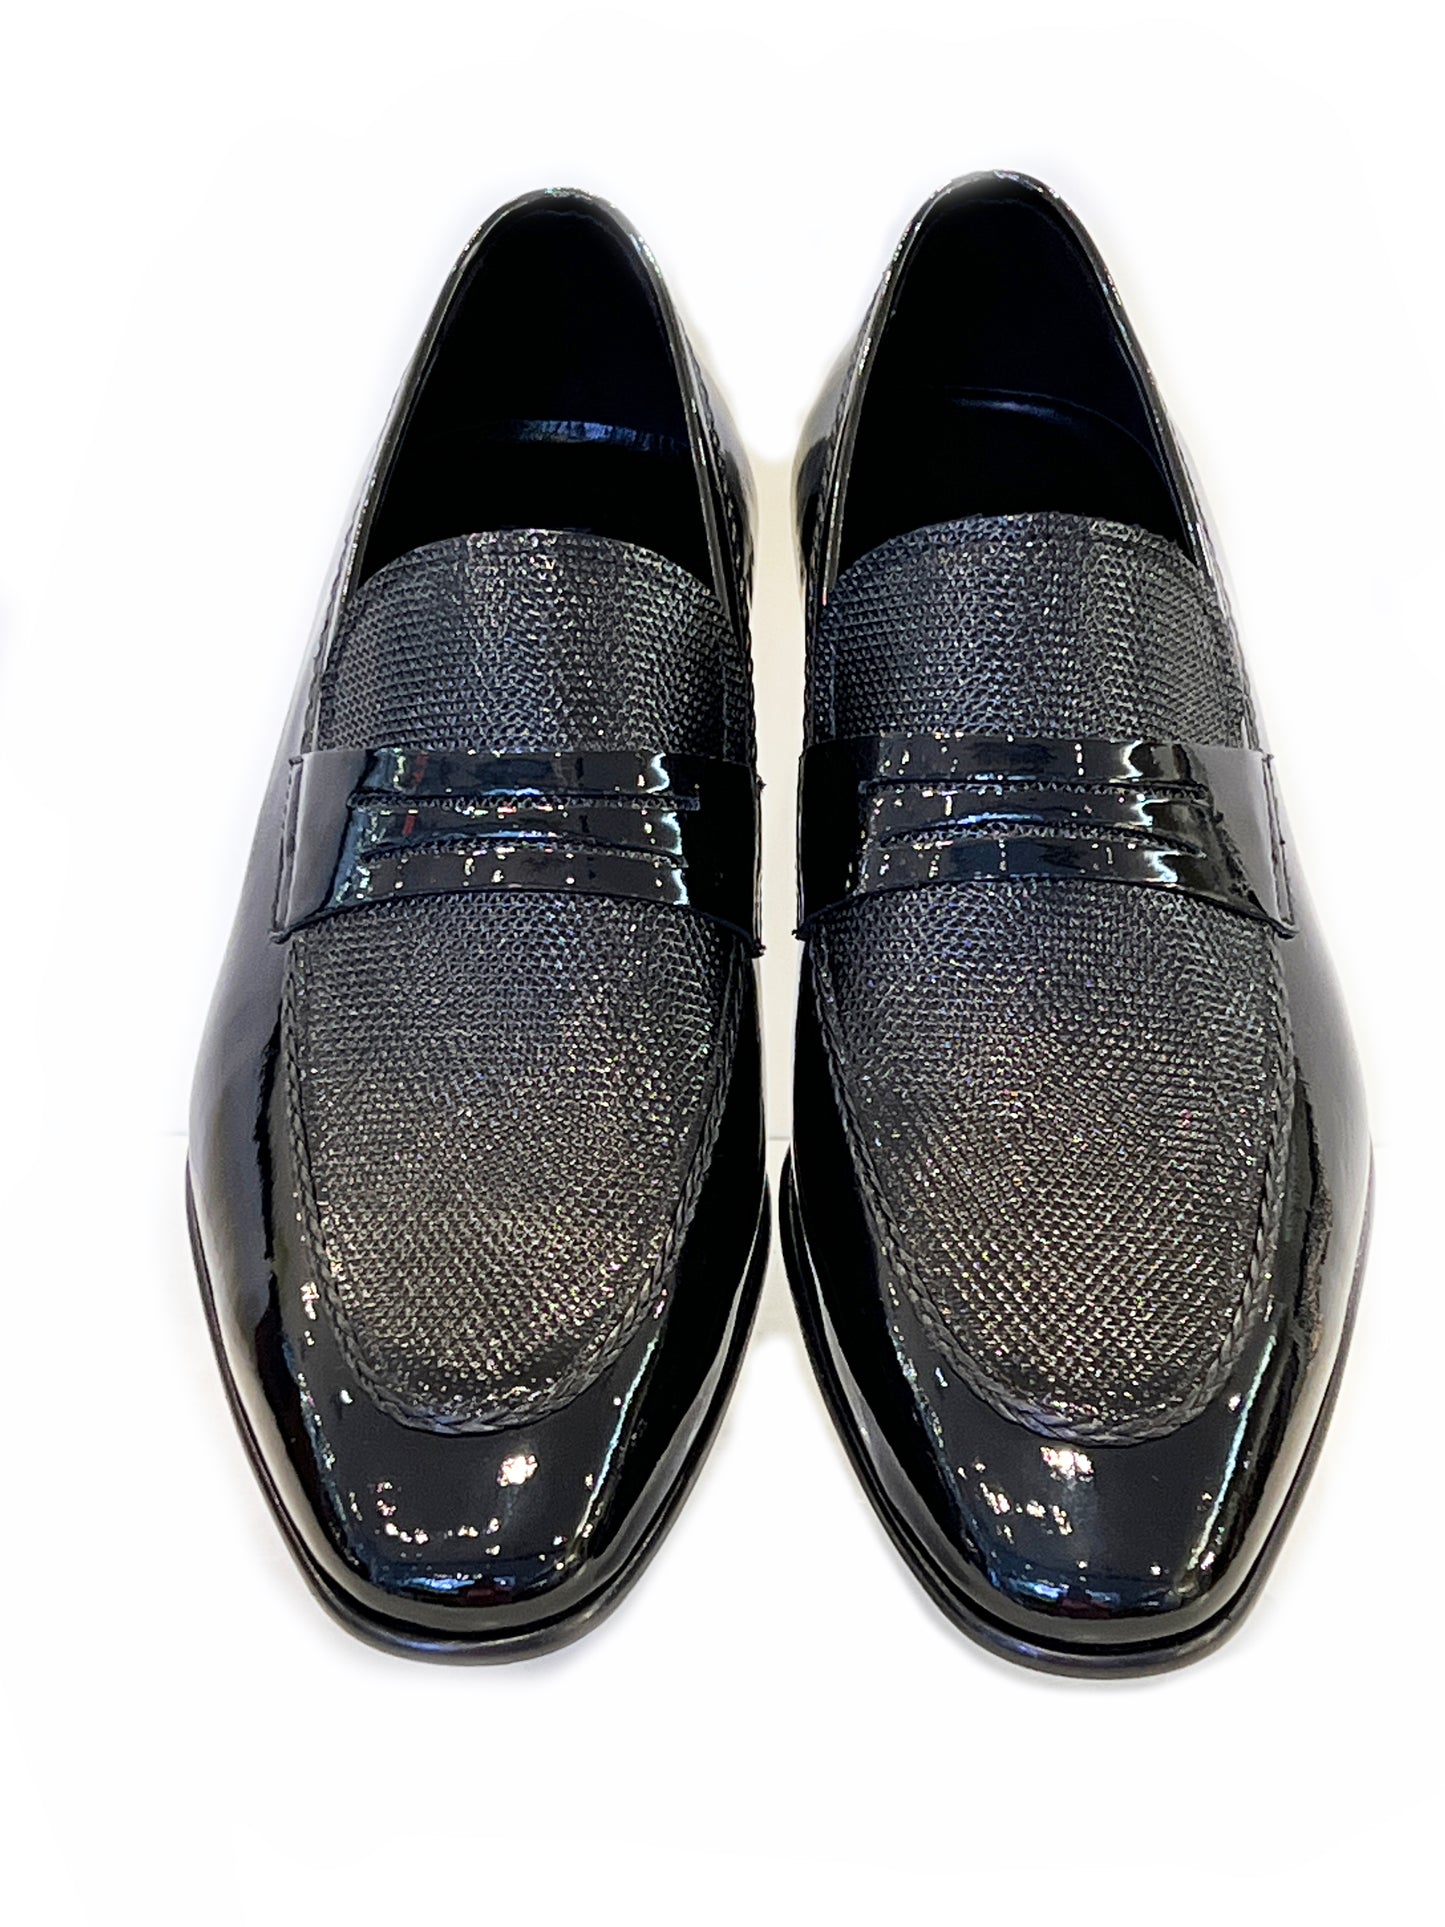 C12701-3711- Formal Leather Loafer- Solid Black